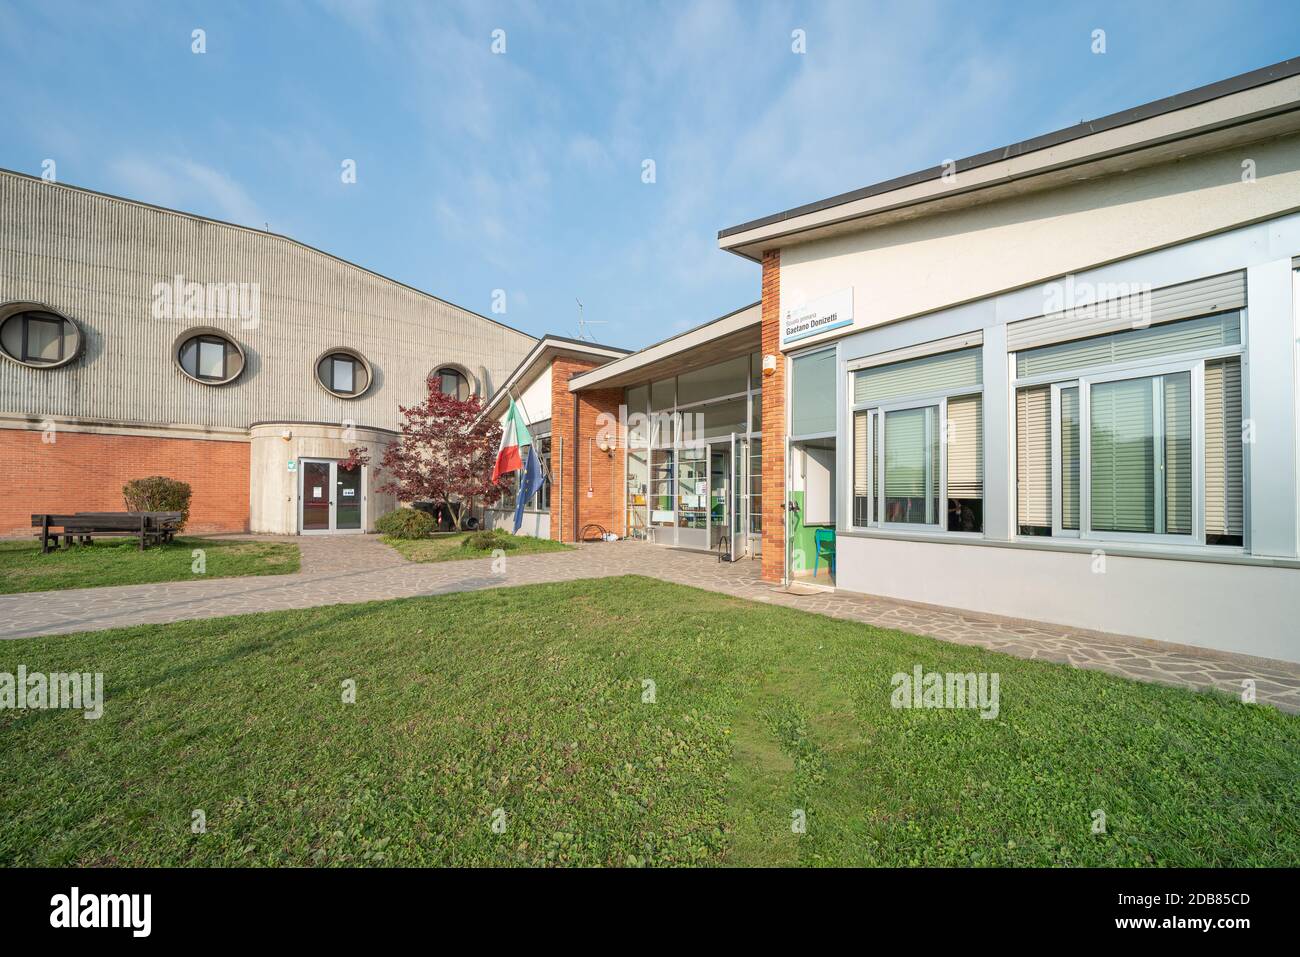 External view of school, Italian school building Stock Photo